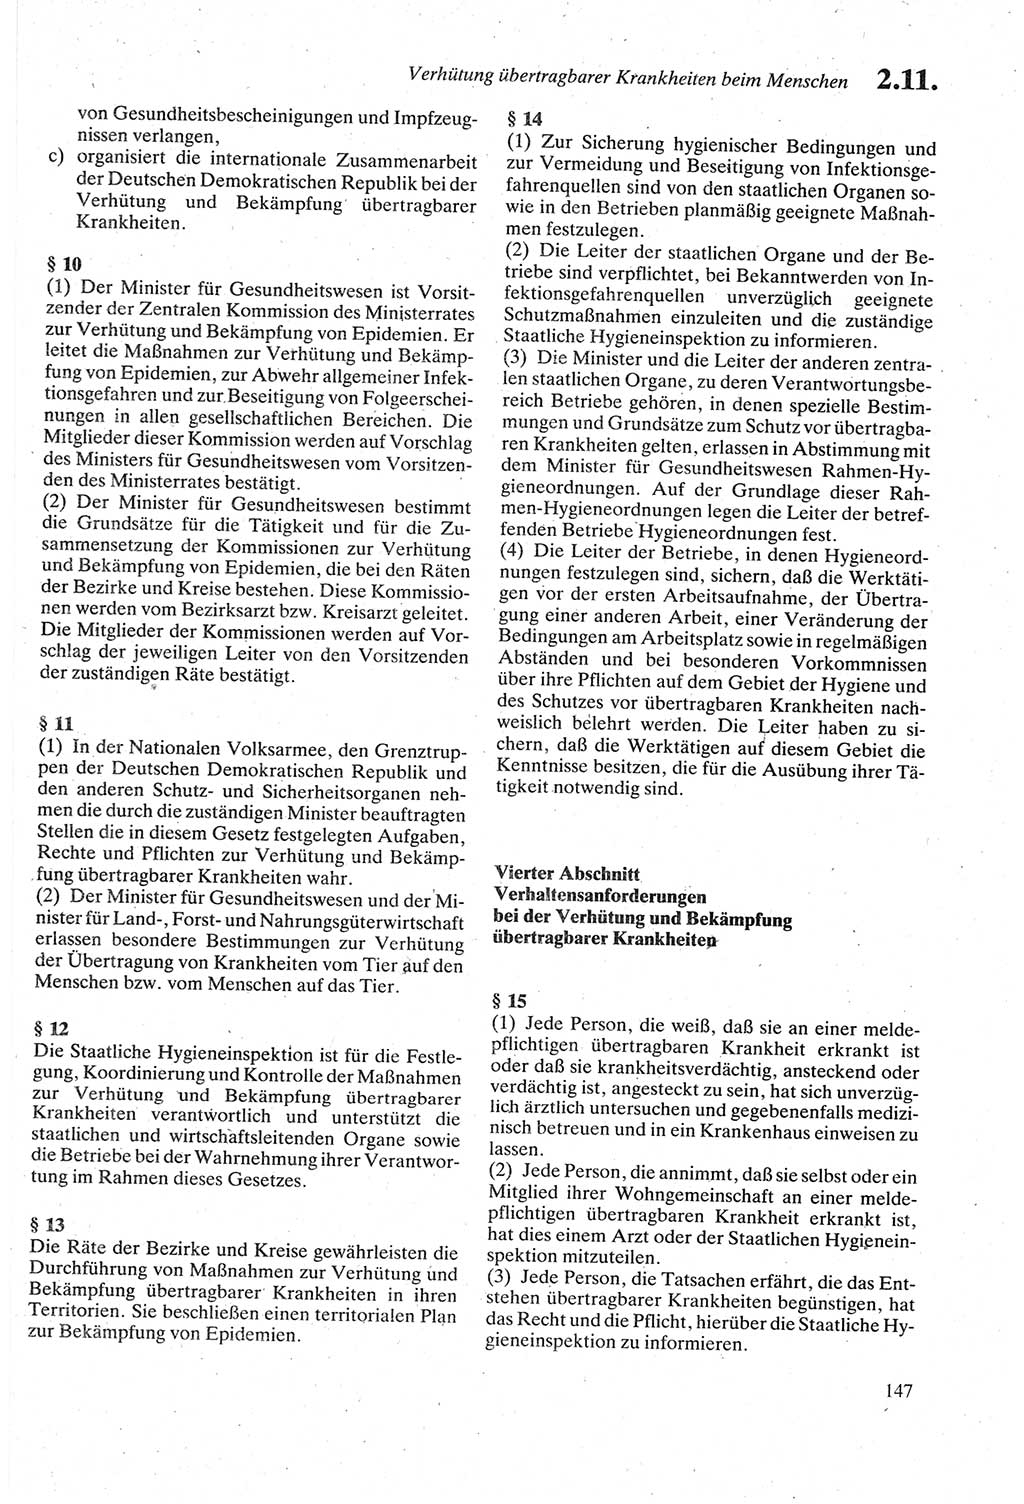 Strafgesetzbuch (StGB) der Deutschen Demokratischen Republik (DDR) sowie angrenzende Gesetze und Bestimmungen 1979, Seite 147 (StGB DDR Ges. Best. 1979, S. 147)